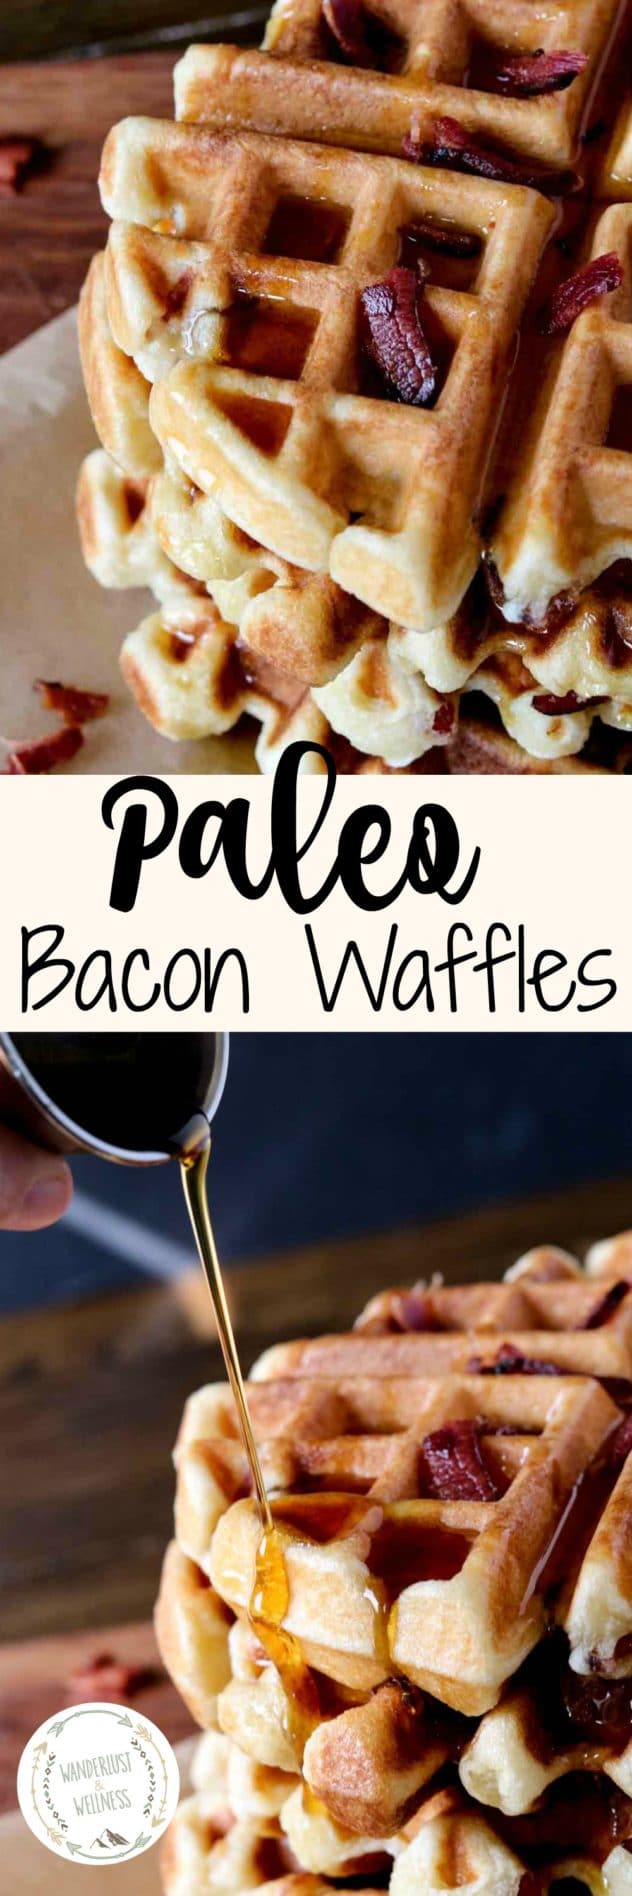 Paleo Bacon Waffles